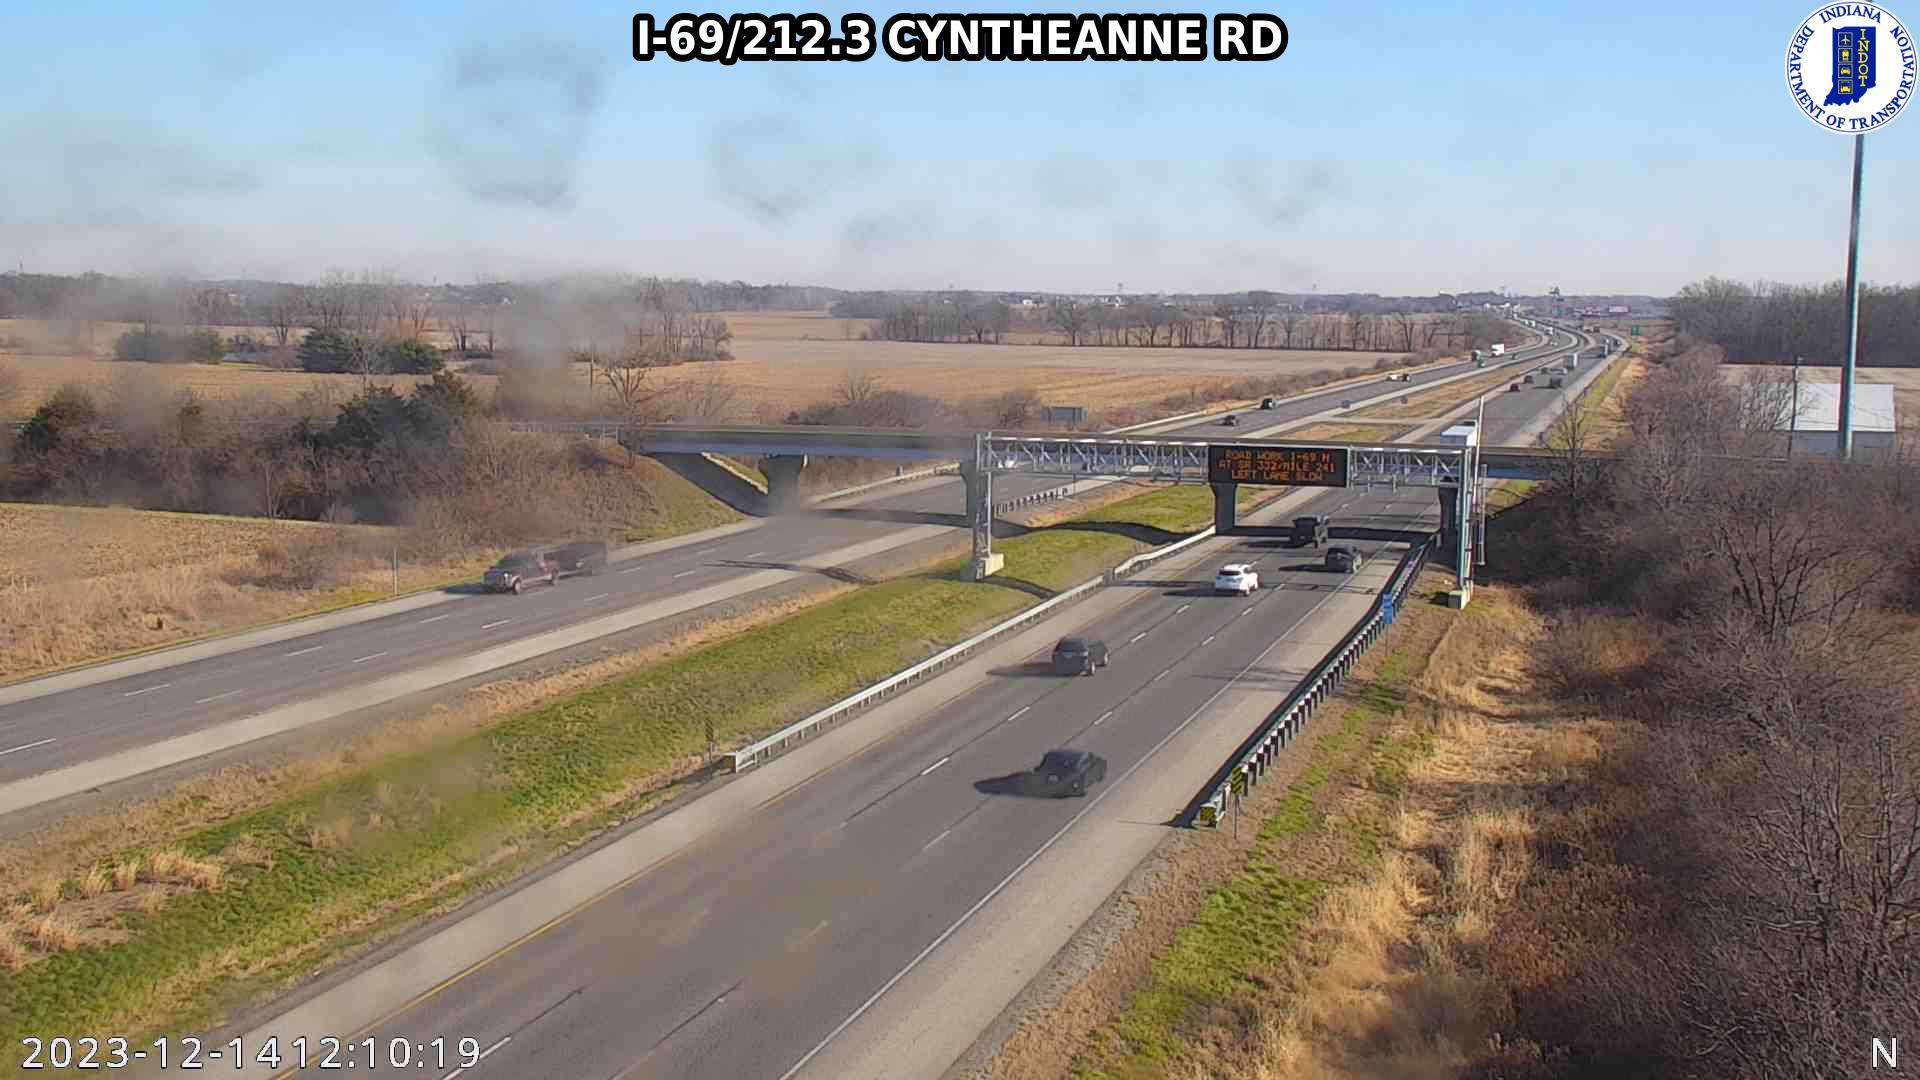 Olio: I-69: I-69/212.3 CYNTHEANNE RD Traffic Camera